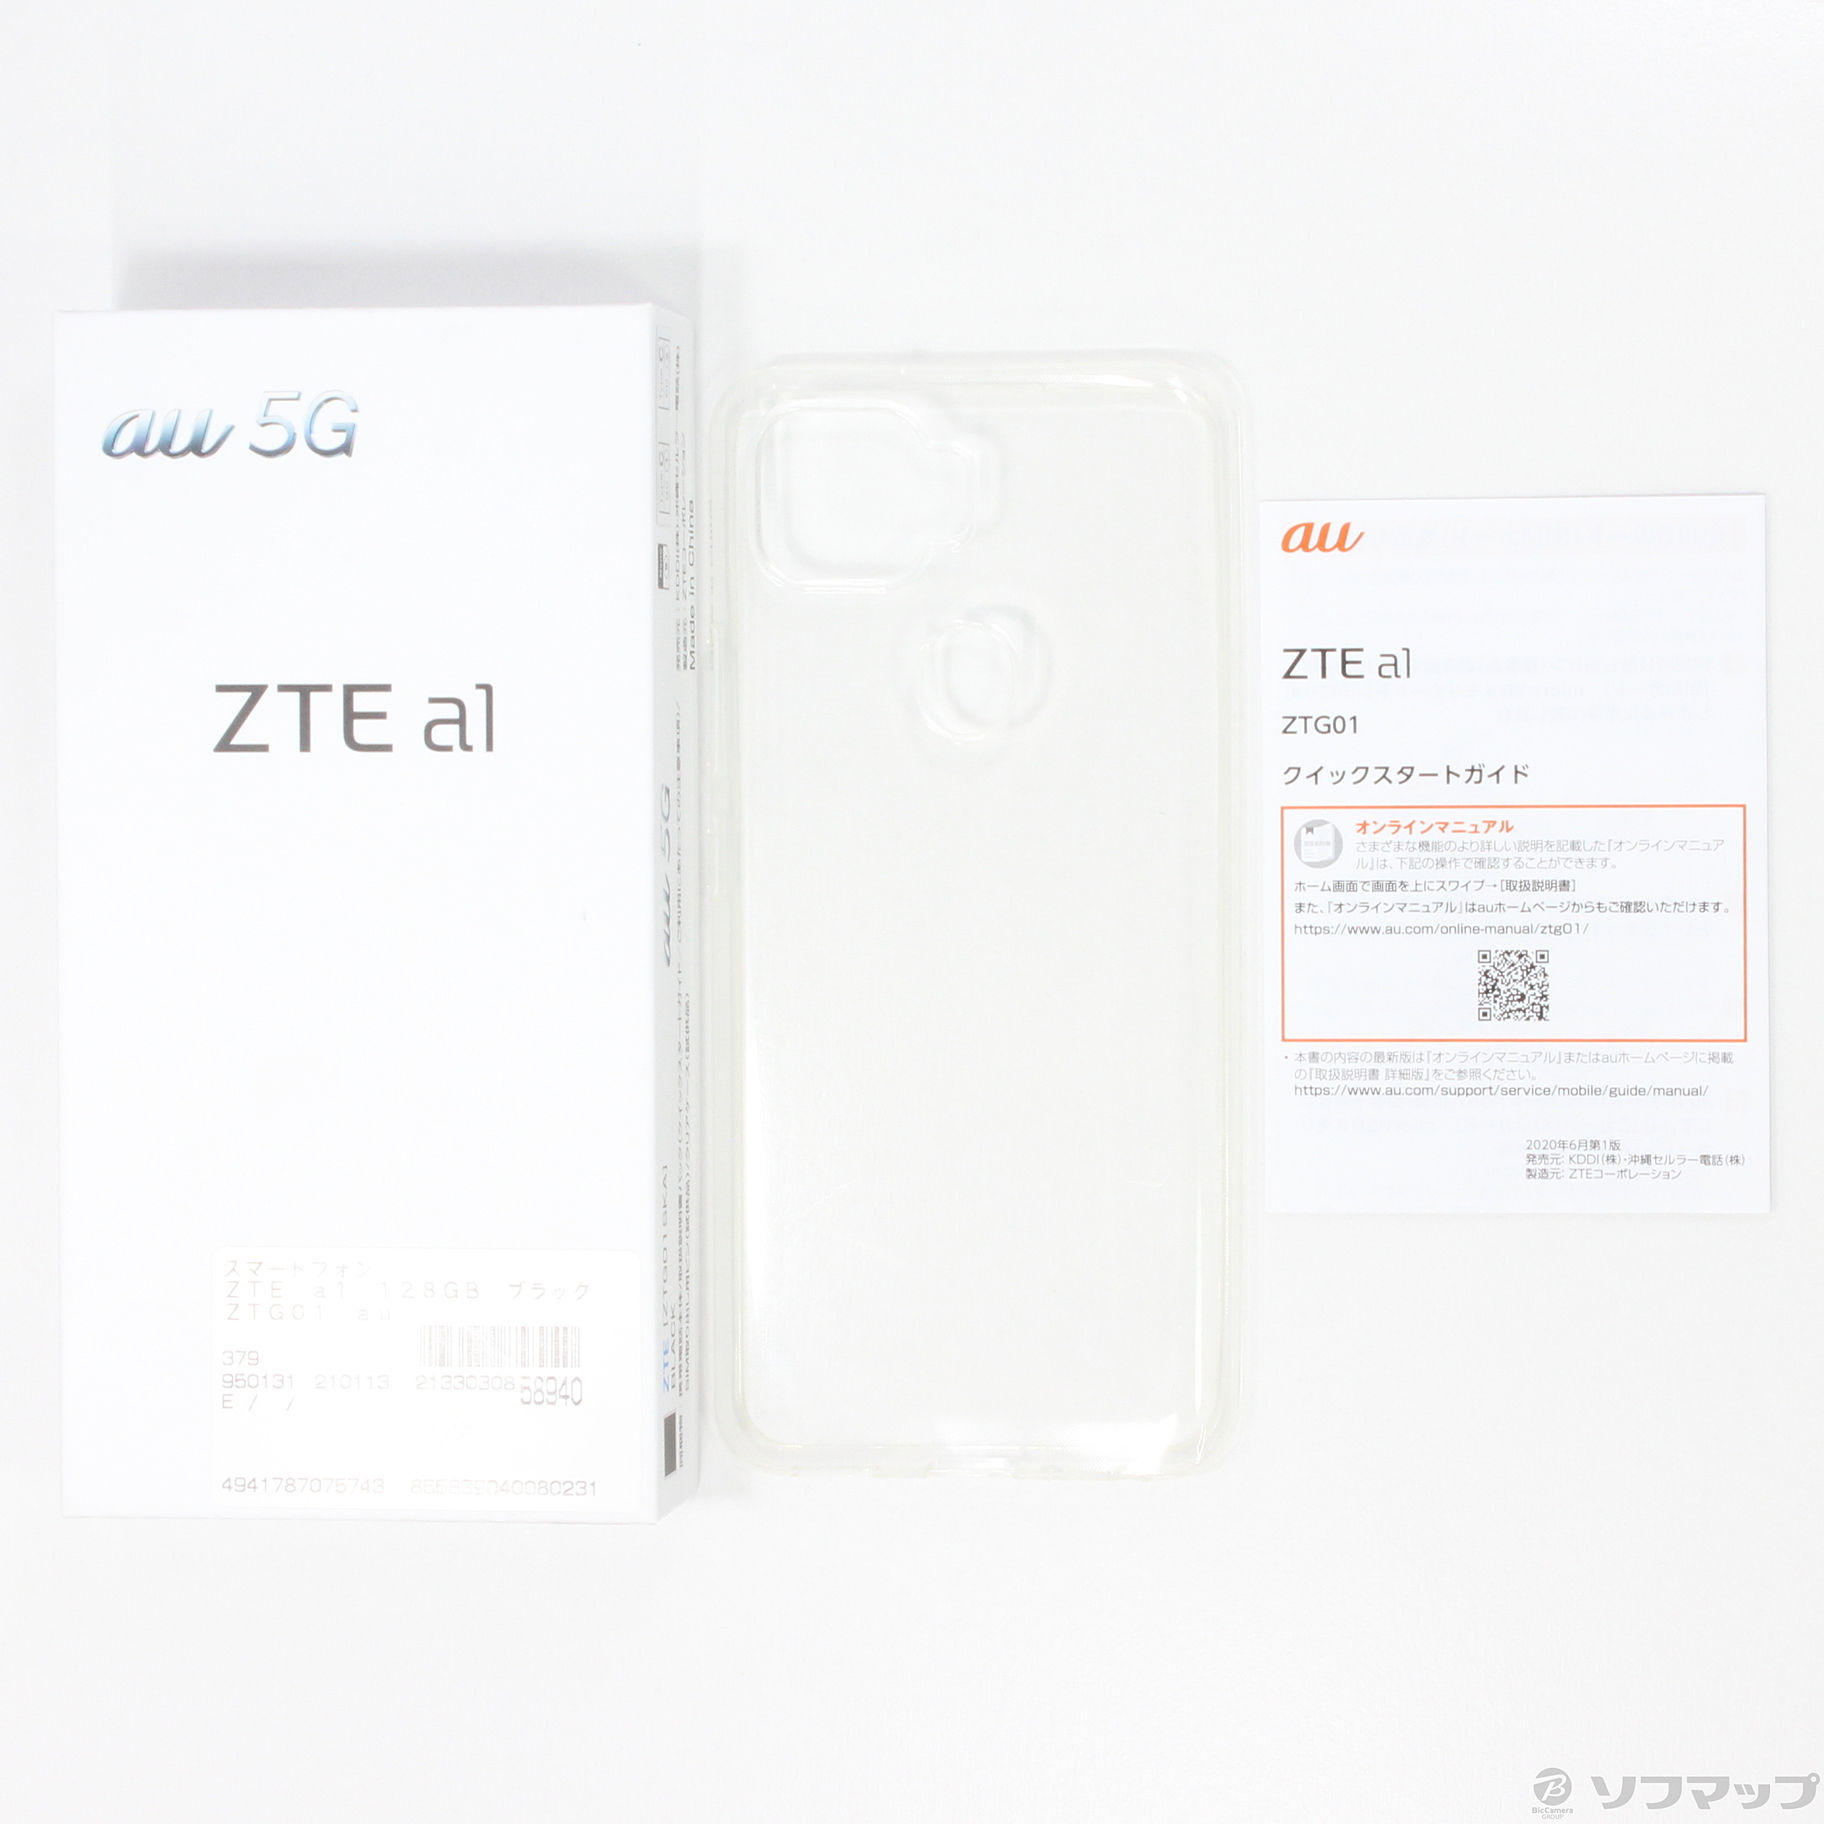 セール対象品 ZTE a1 128GB ブラック ZTG01 au 〔ネットワーク利用制限▲〕